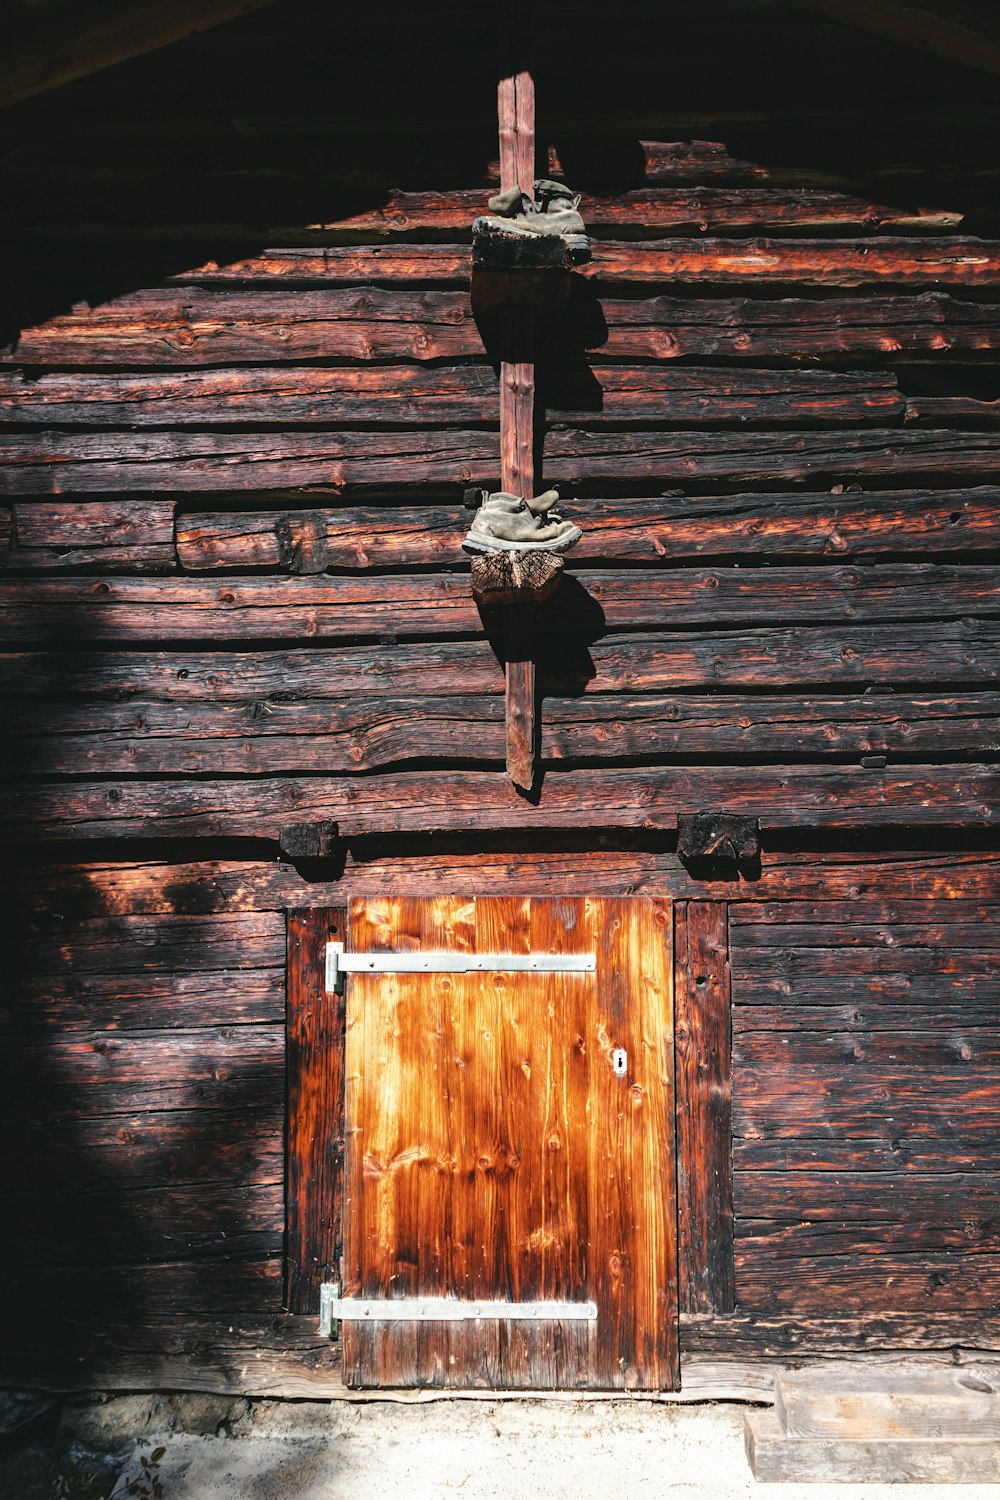 a wooden door with a metal handle